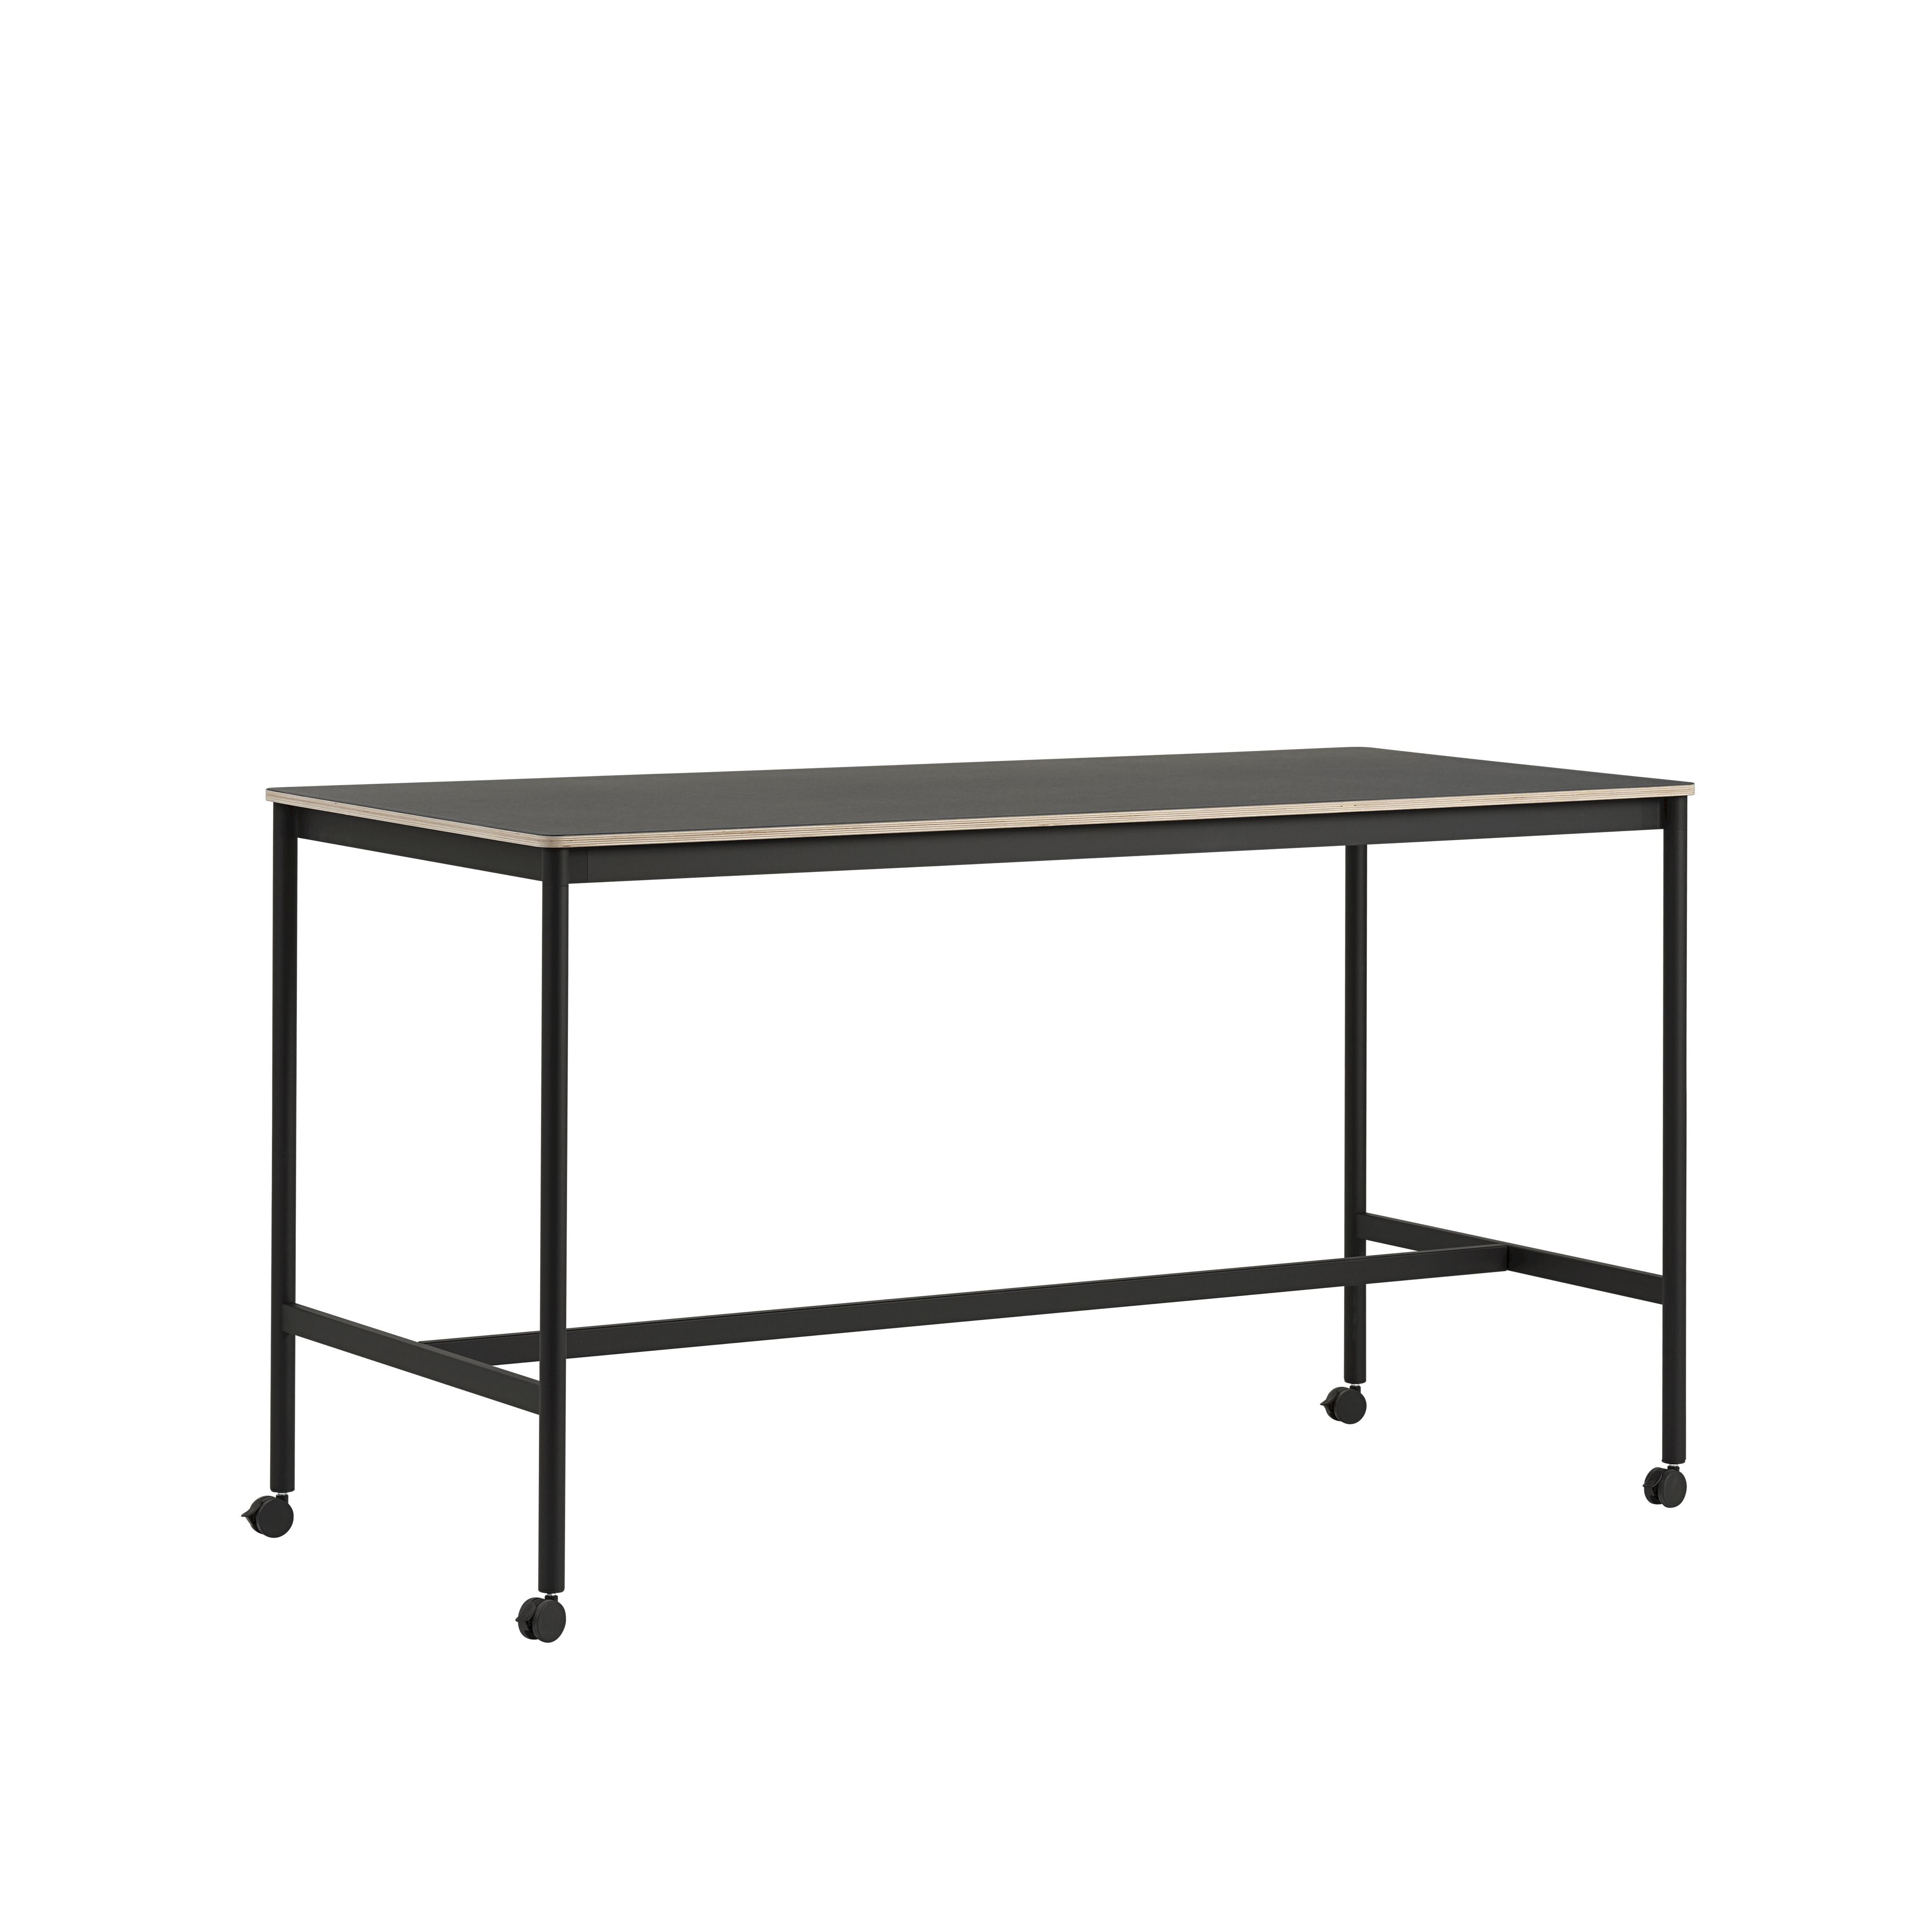 Muuto Base High Table M. Rollen 190x85x105 cm, schwarzes Linoleum/Schwarzer Sperrholz